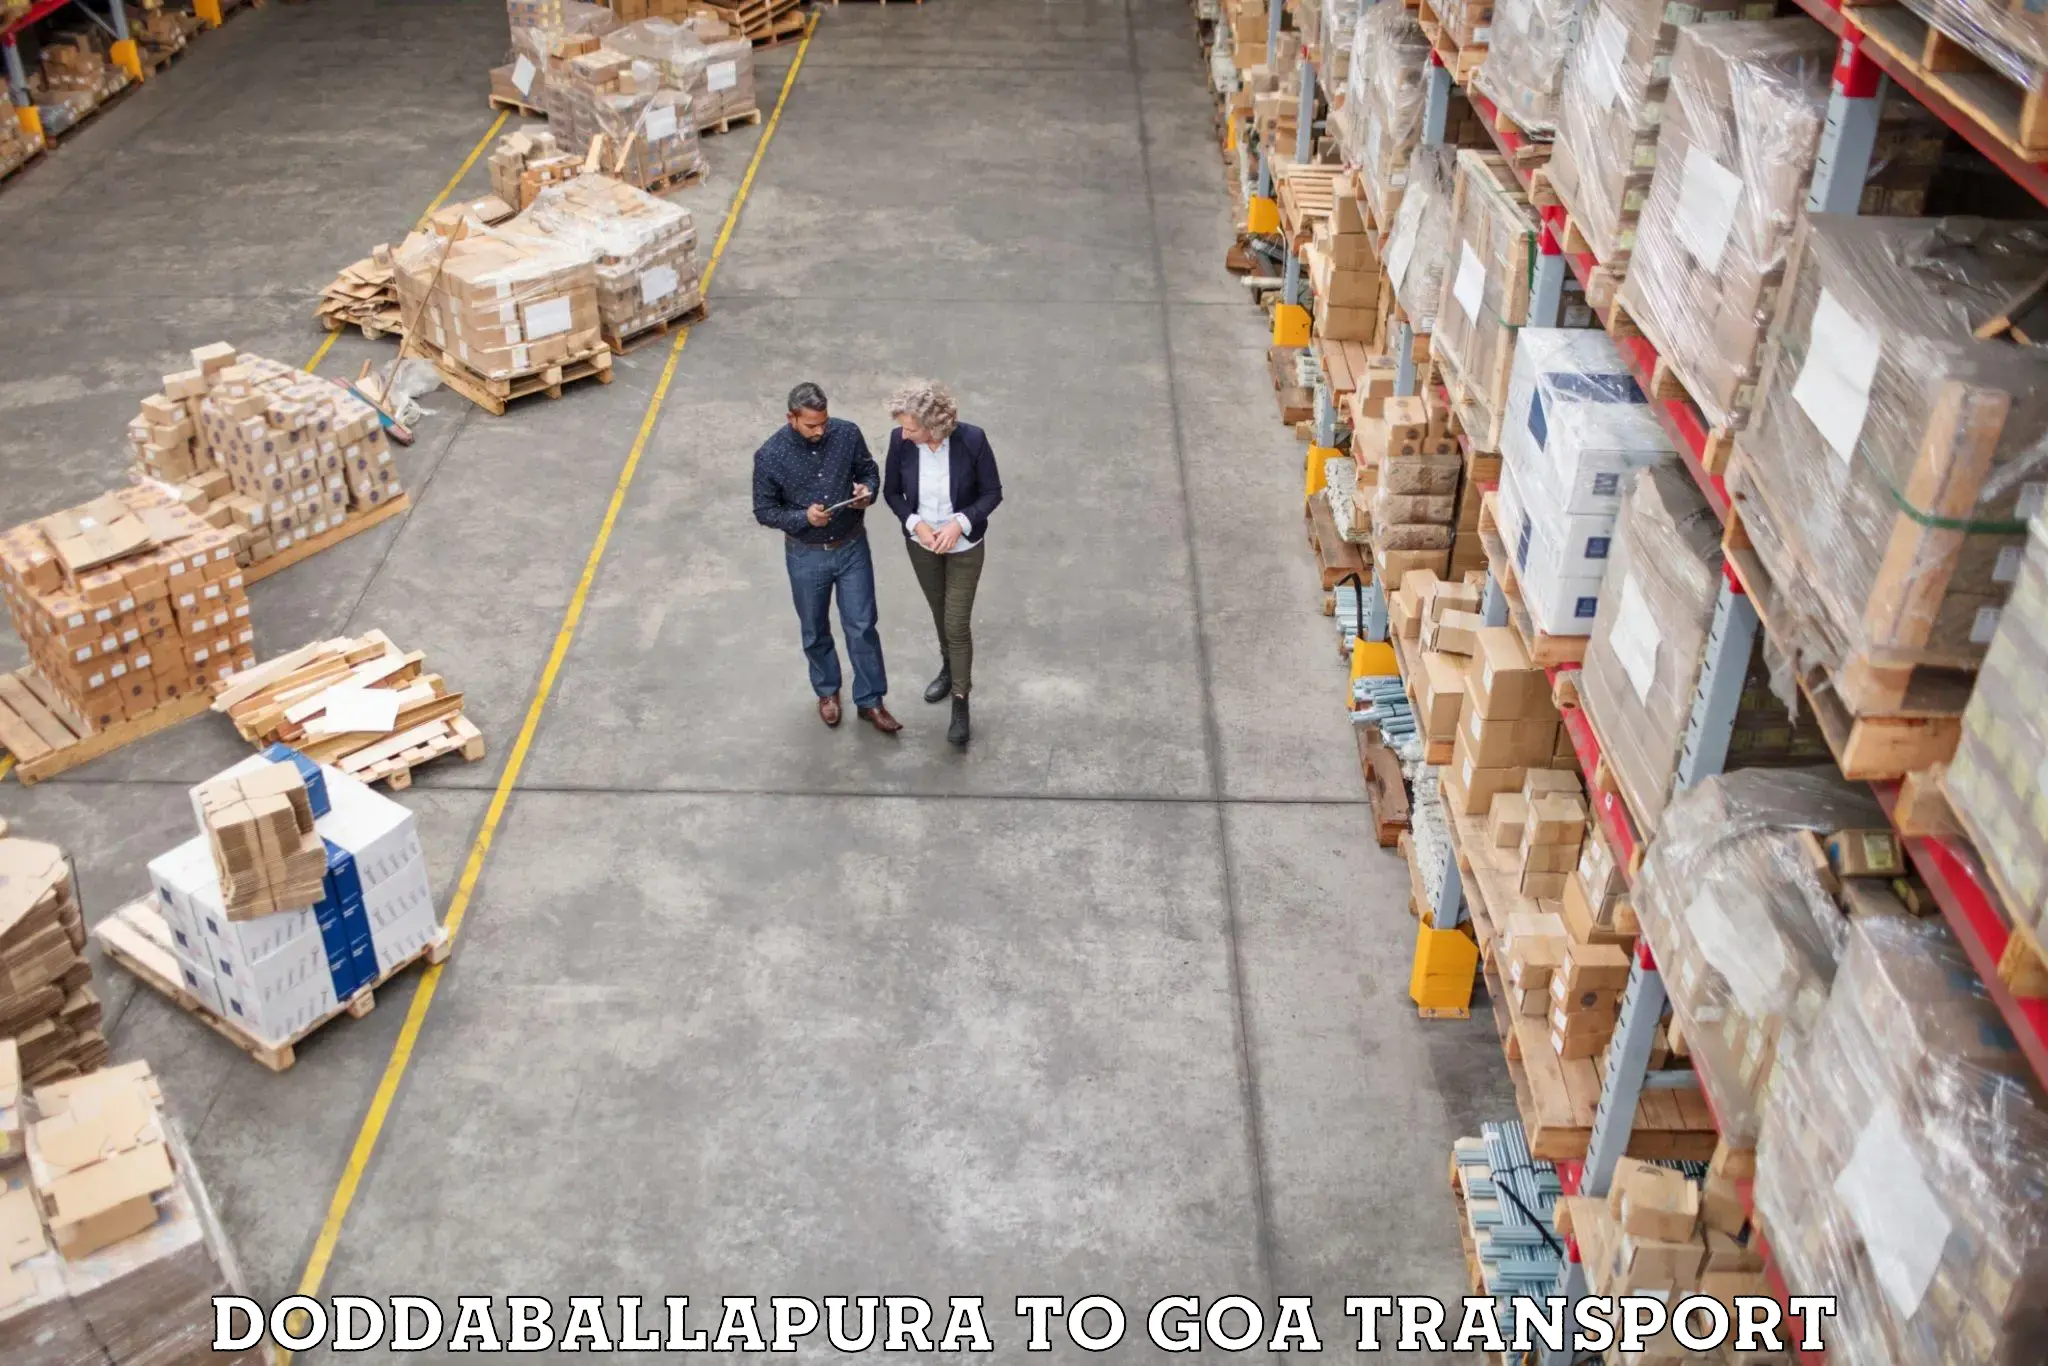 Transport services Doddaballapura to Goa